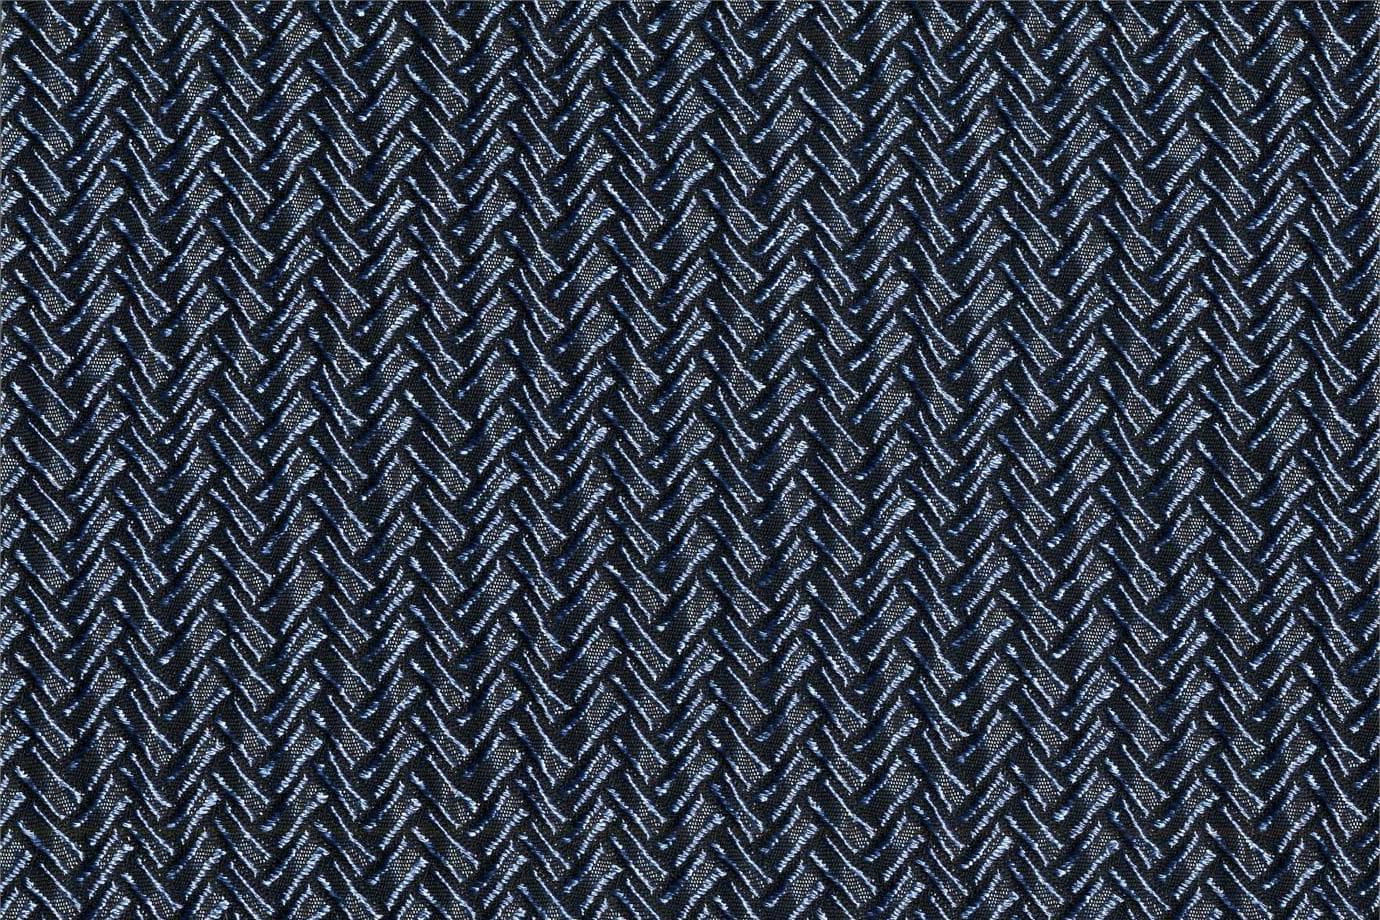 J1843 POGGIOREALE 023 Blu cina home decoration fabric